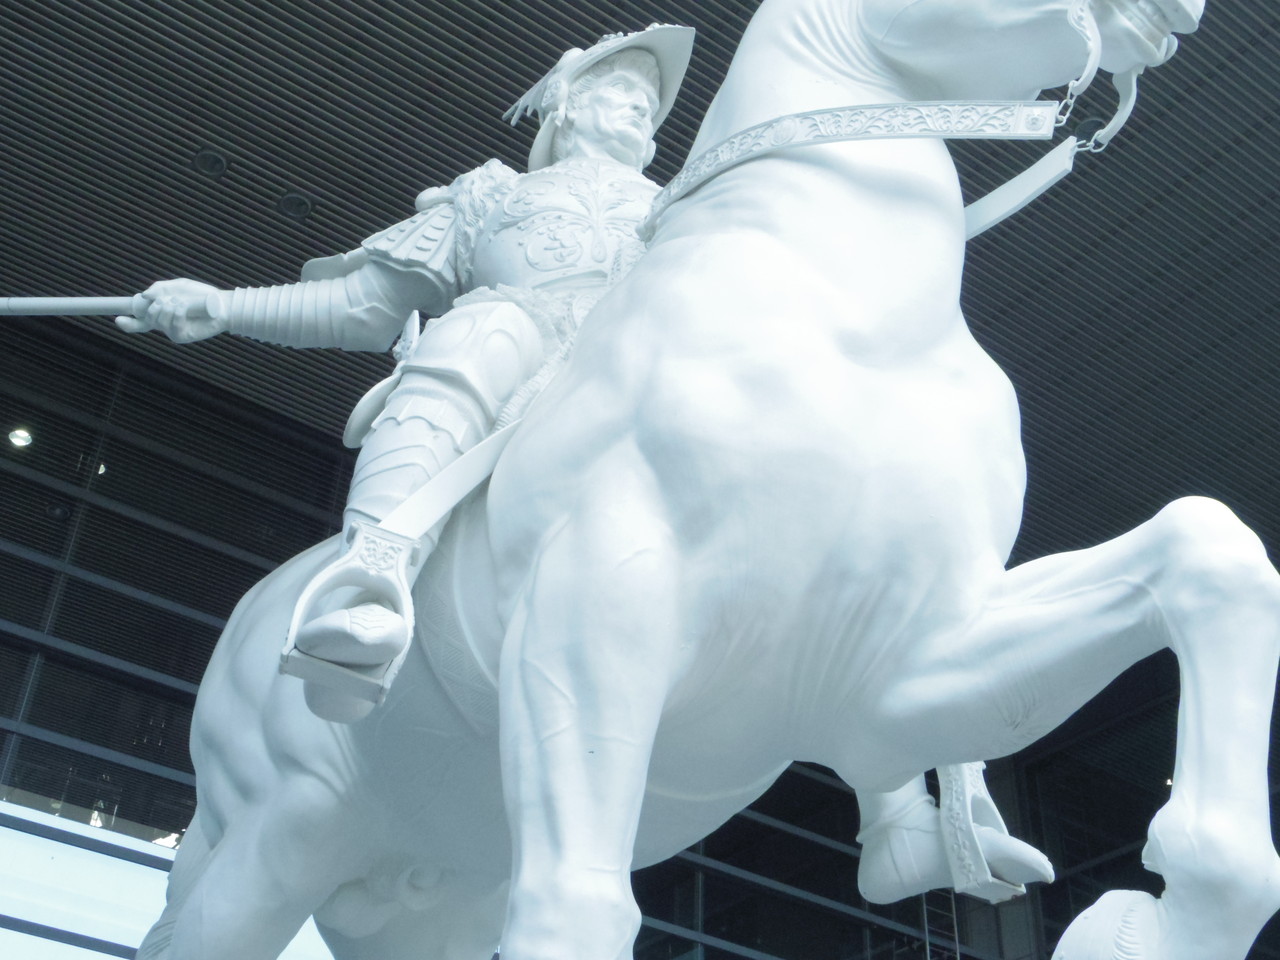 名古屋国際会議場にそびえる巨大な騎馬像。レオナルド・ダ・ヴィンチが作りかけていたものだとか。